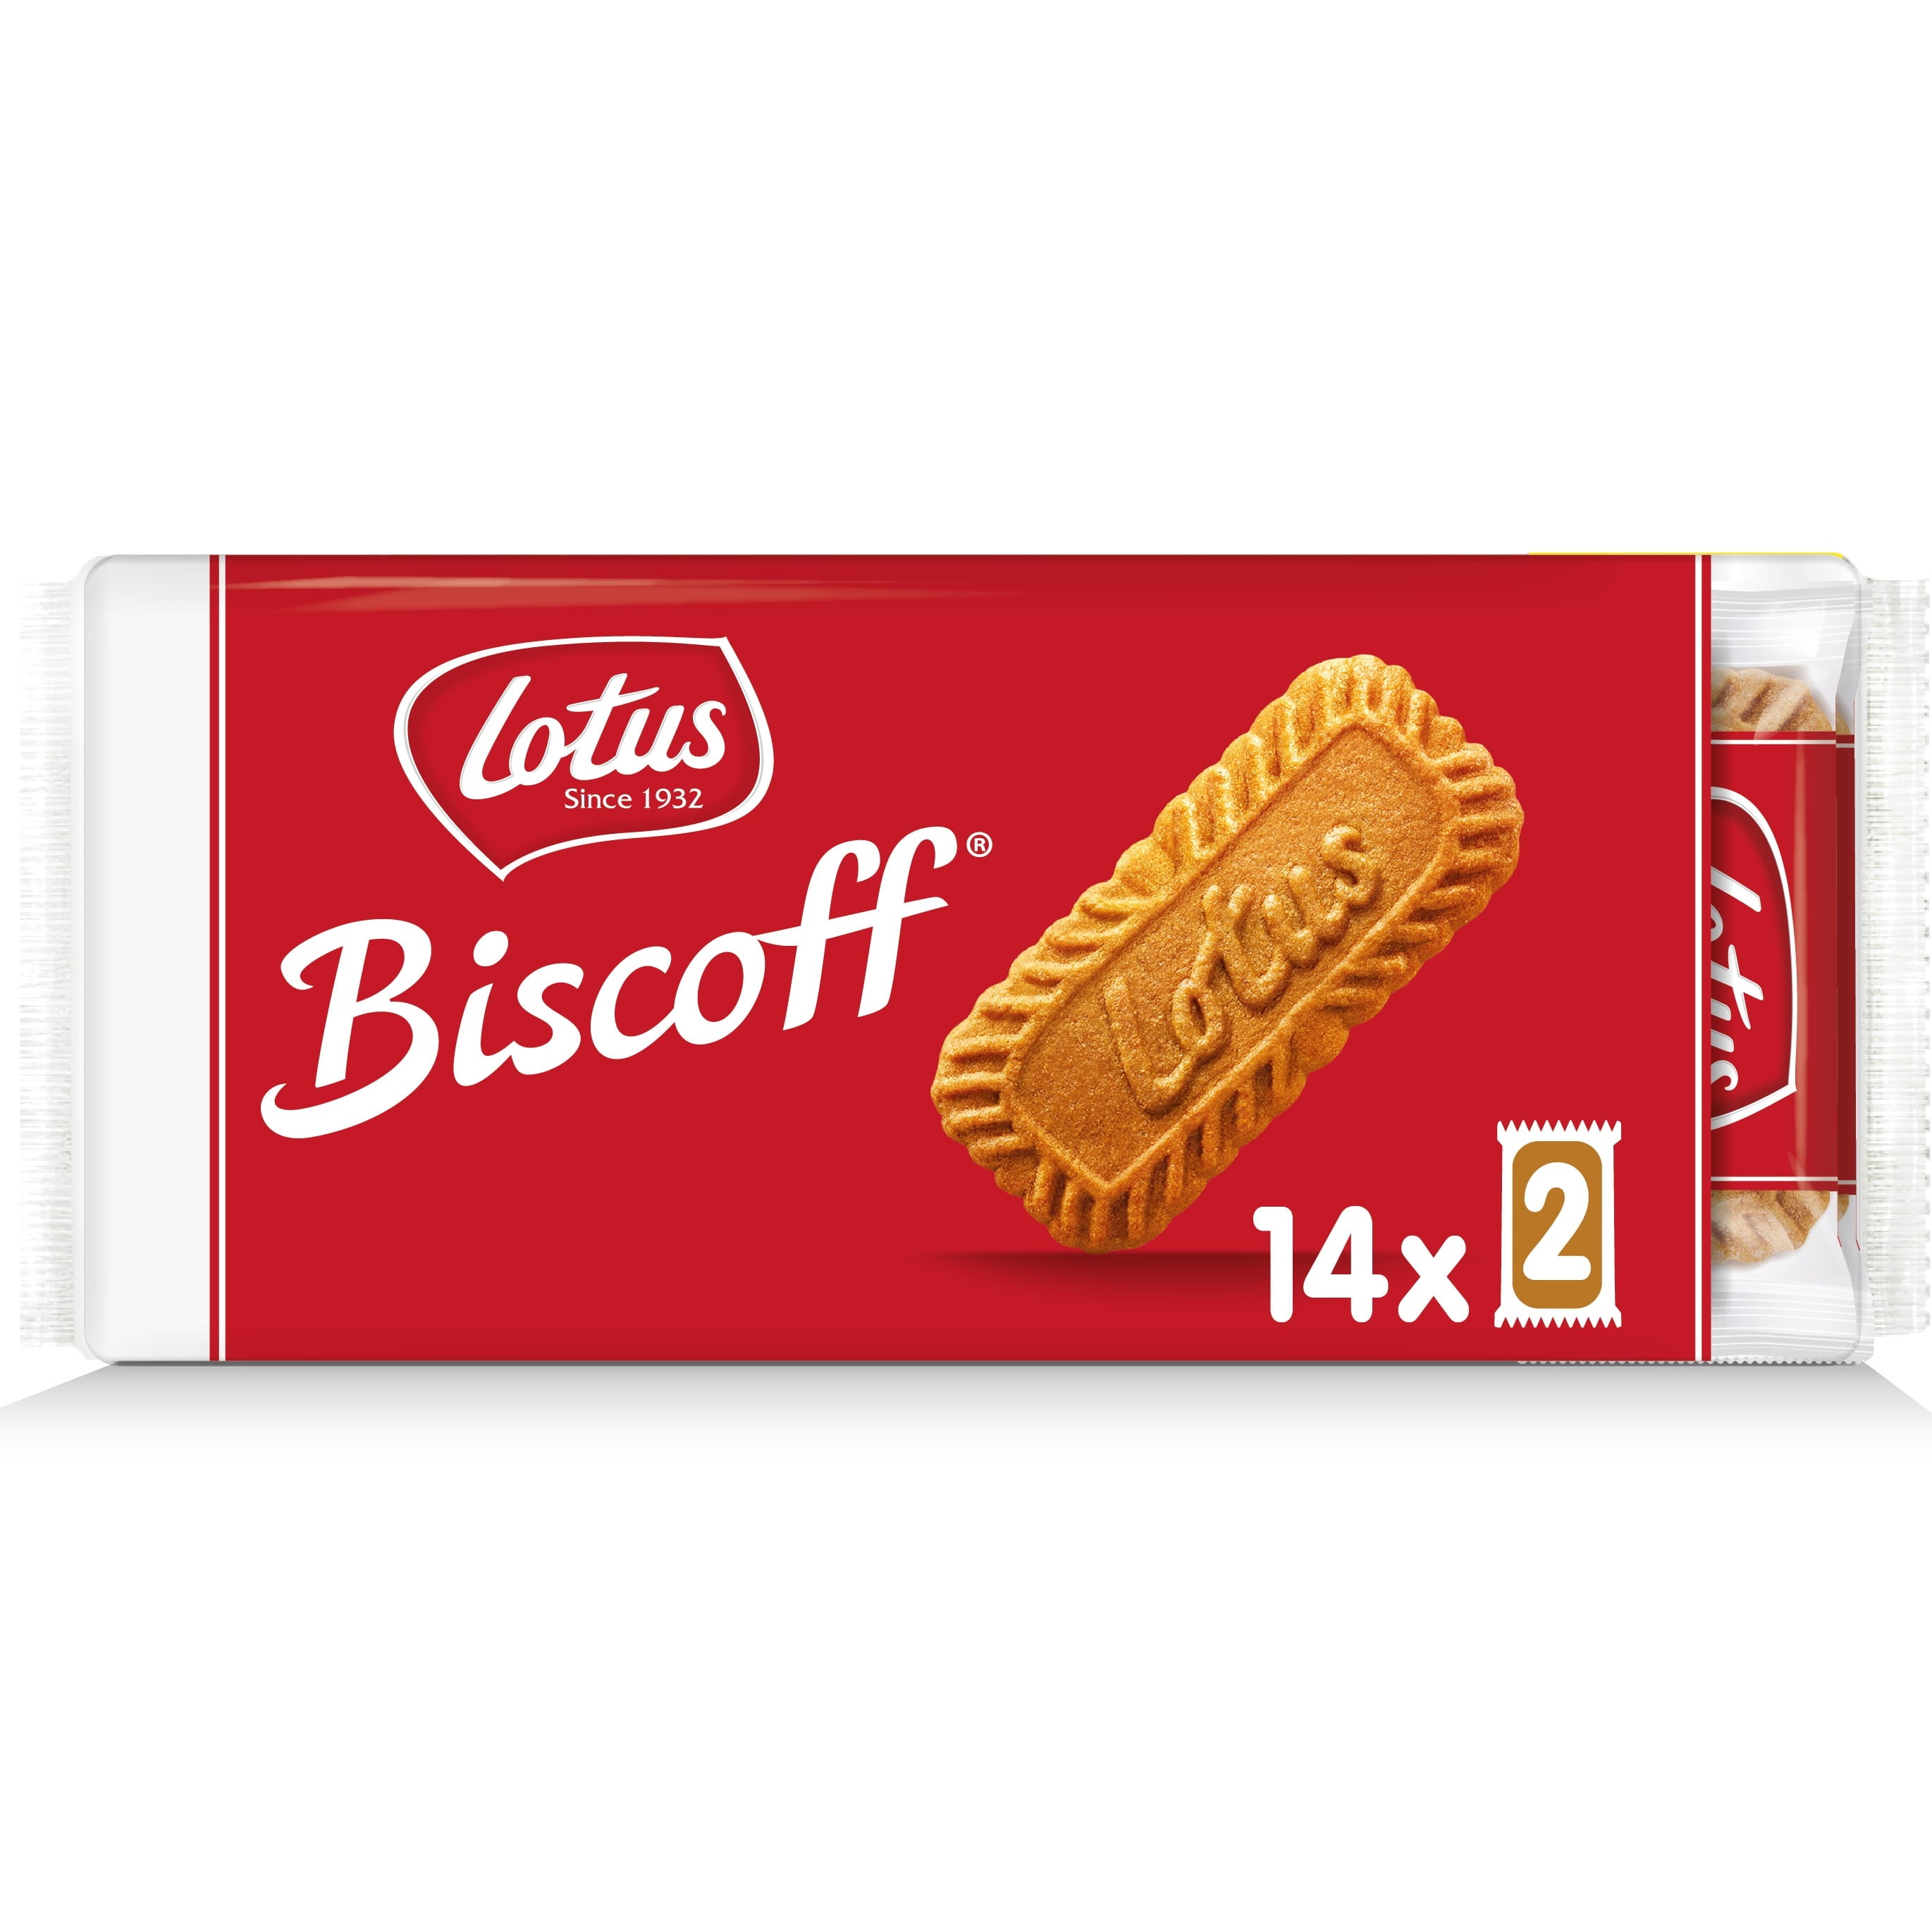 Lotus Biscoff European Biscuit Cookies 7.65oz Pack